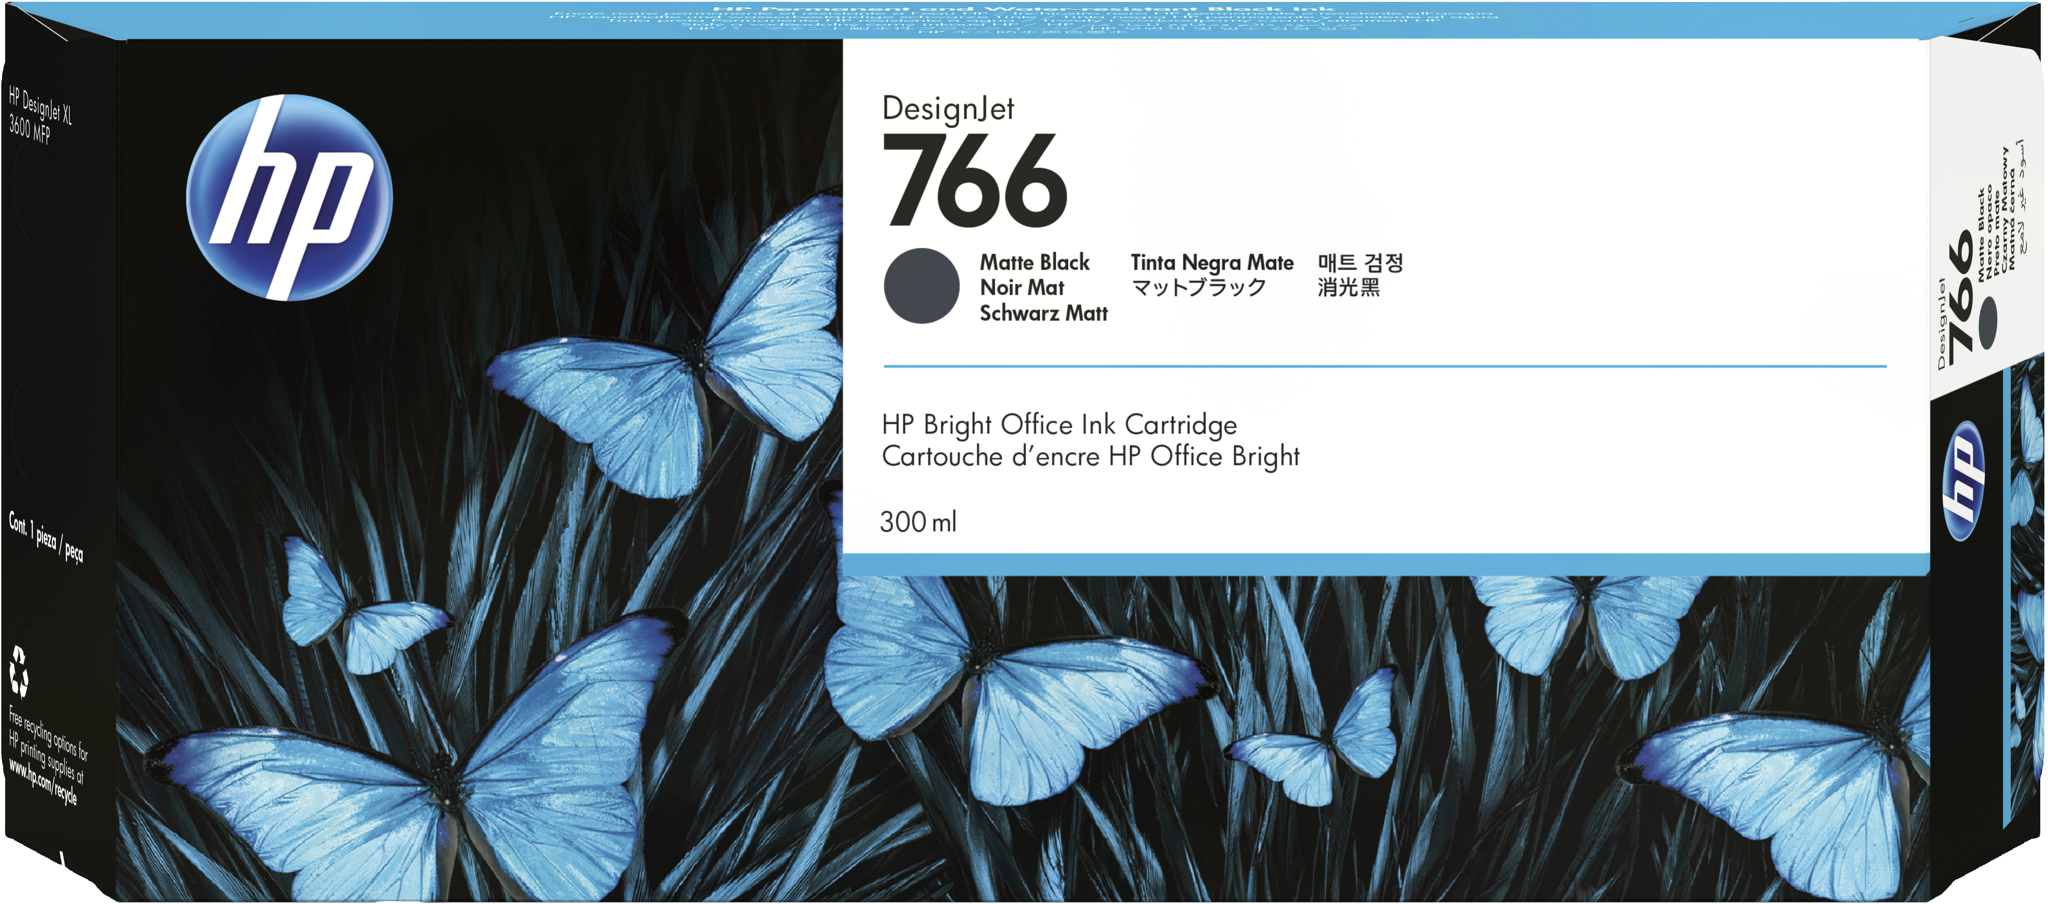 Bild von HP 766 Mattschwarz DesignJet Druckerpatrone - 300 ml - Standardertrag - Tinte auf Pigmentbasis - Tinte auf Pigmentbasis - 300 ml - 1 Stück(e)